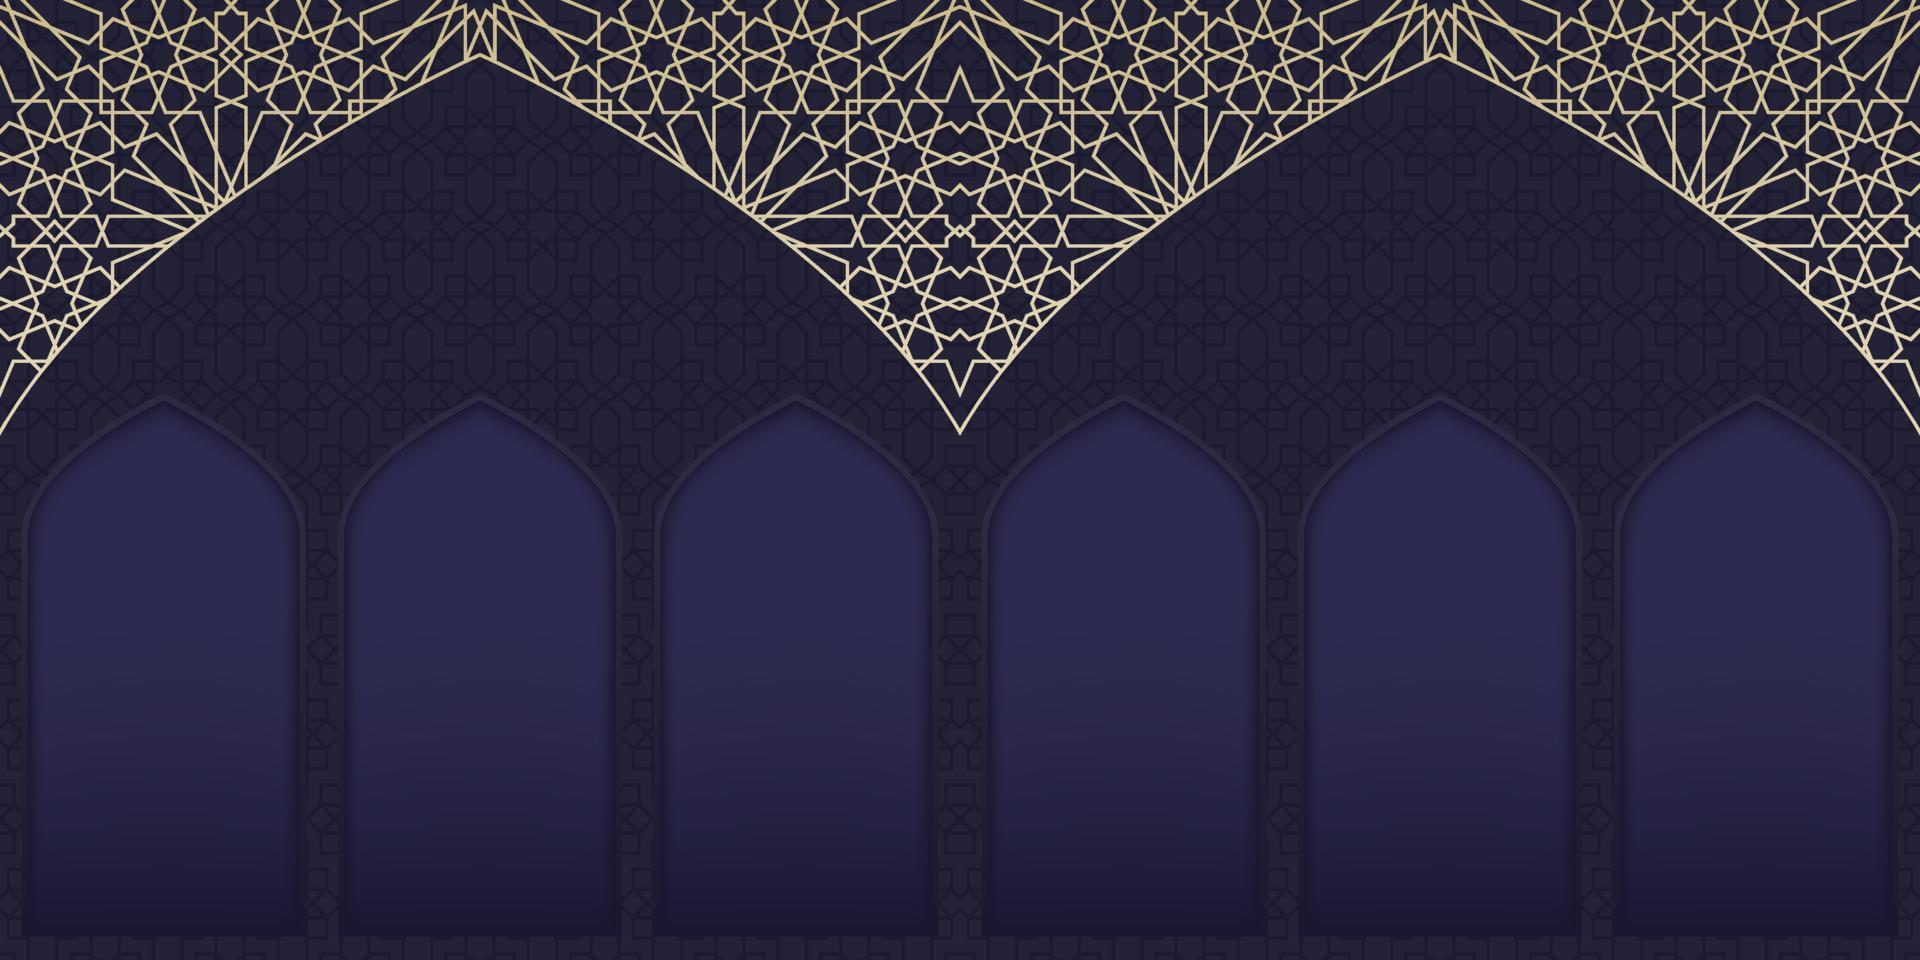 fondo de ramadán kareem. fondo islámico con motivos arabescos y mezquita de ventana. fondo de eid mubarak. ilustración vectorial islámica vector